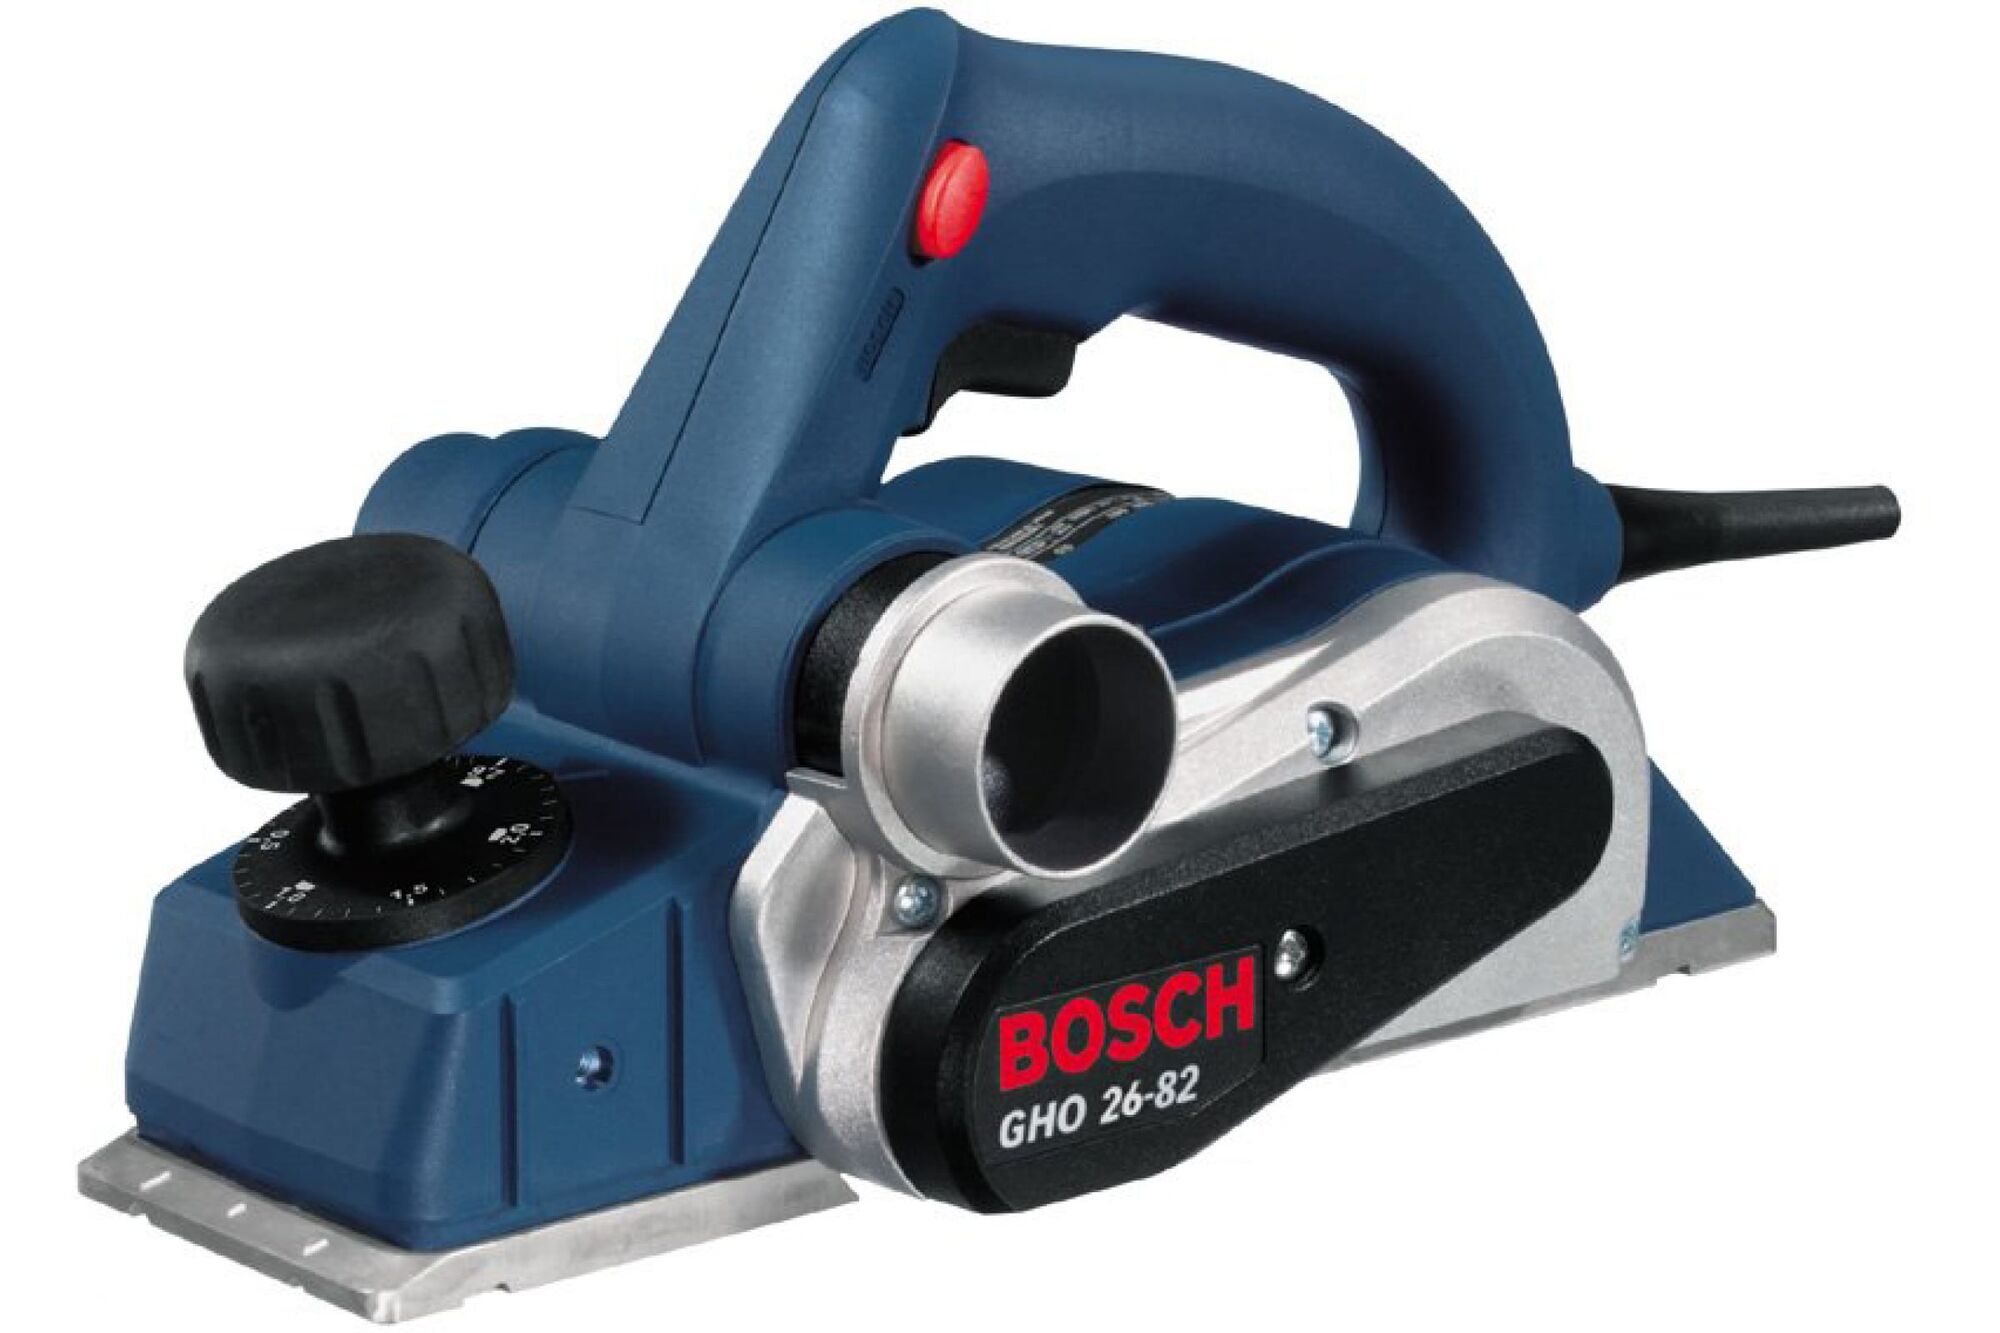 Рубанок Bosch GHO 26-82 0.601.594.308